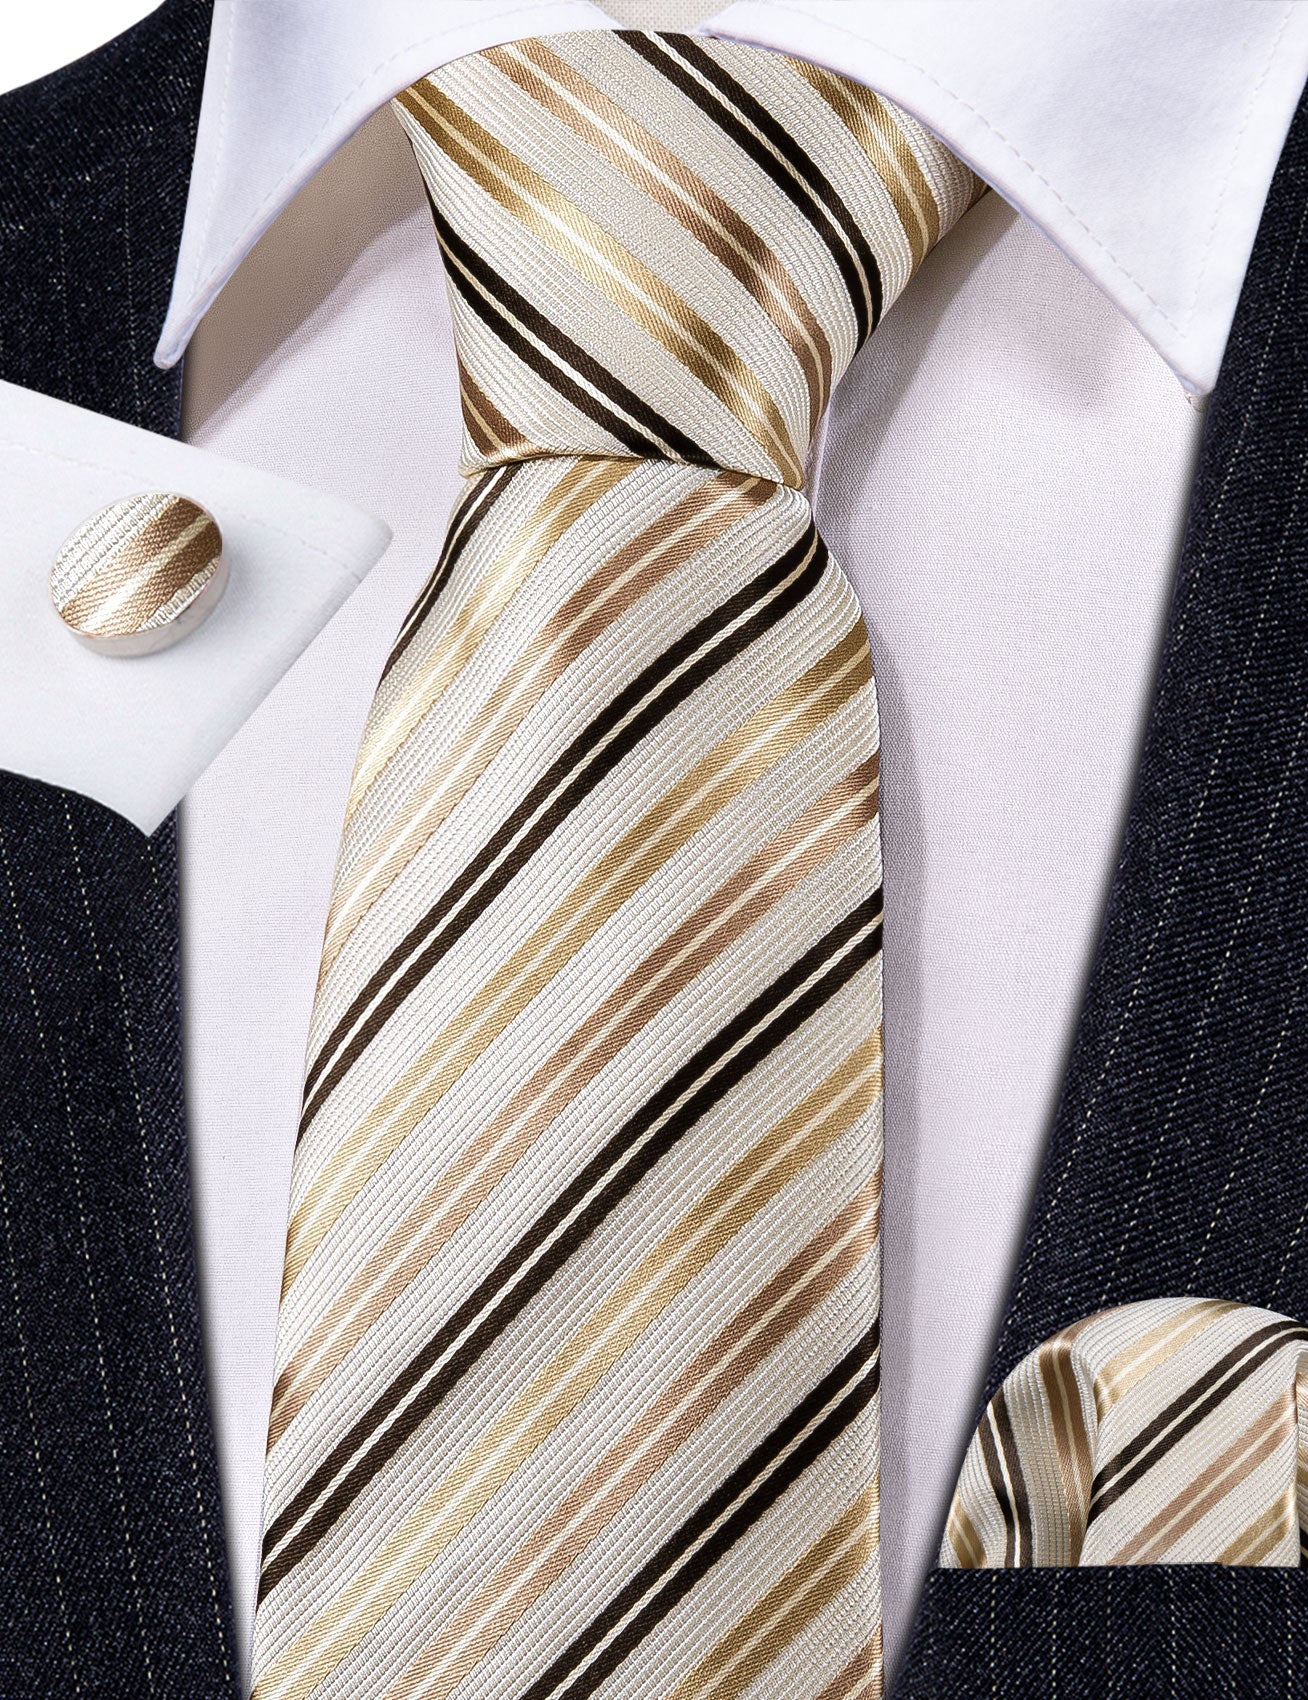 White Gold Striped Silk Tie Handkerchief Cufflinks Set